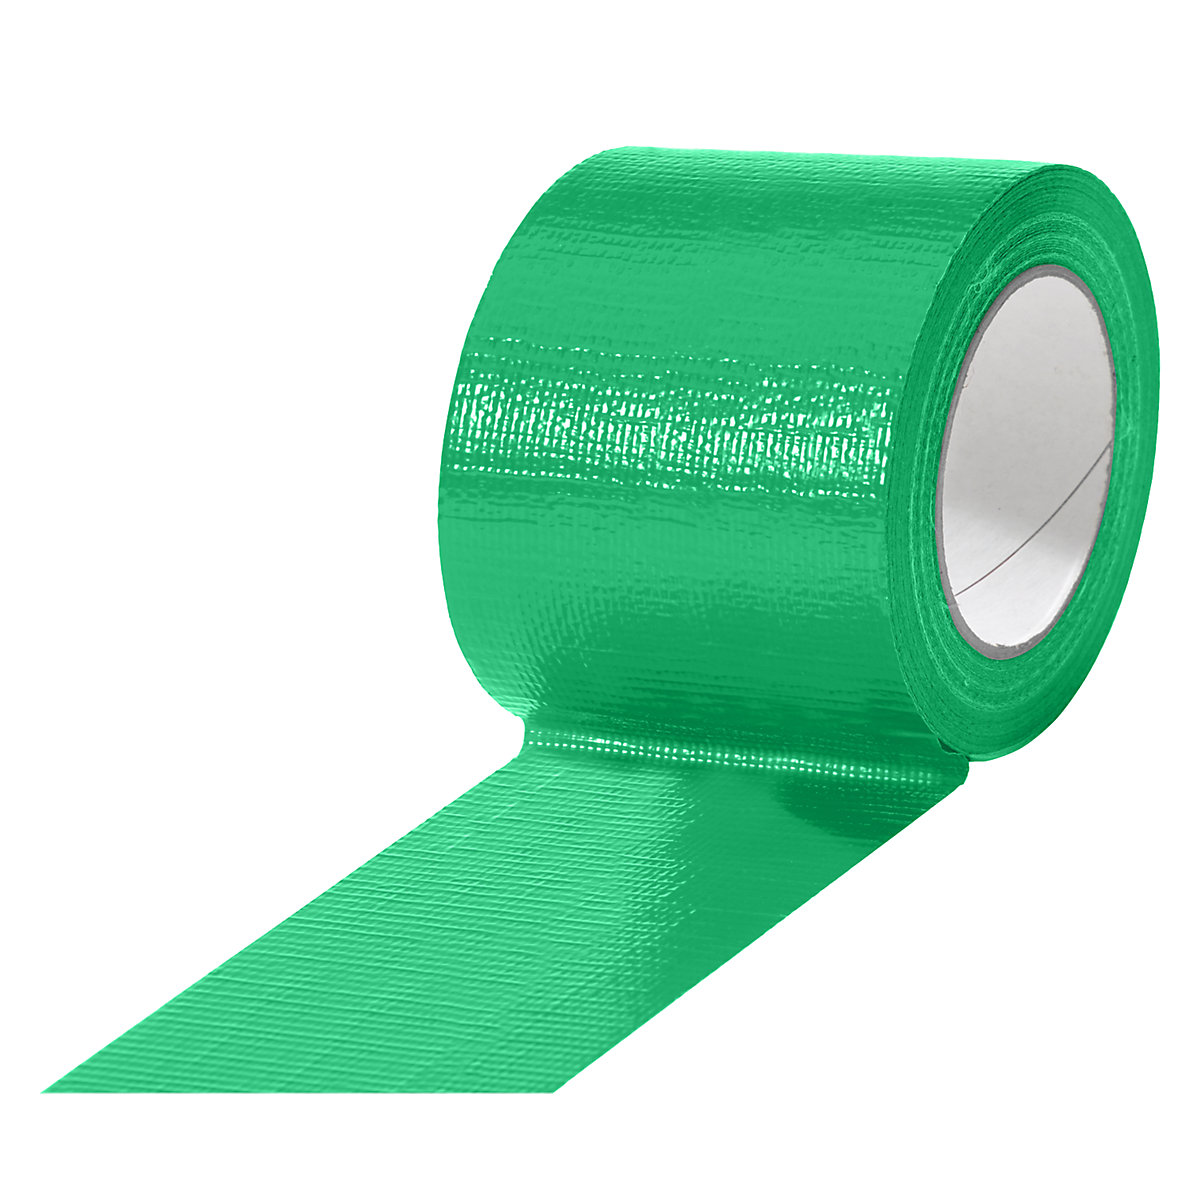 Gewebeband, in verschiedenen Farben, VE 12 Rollen, grün, Bandbreite 75 mm-8